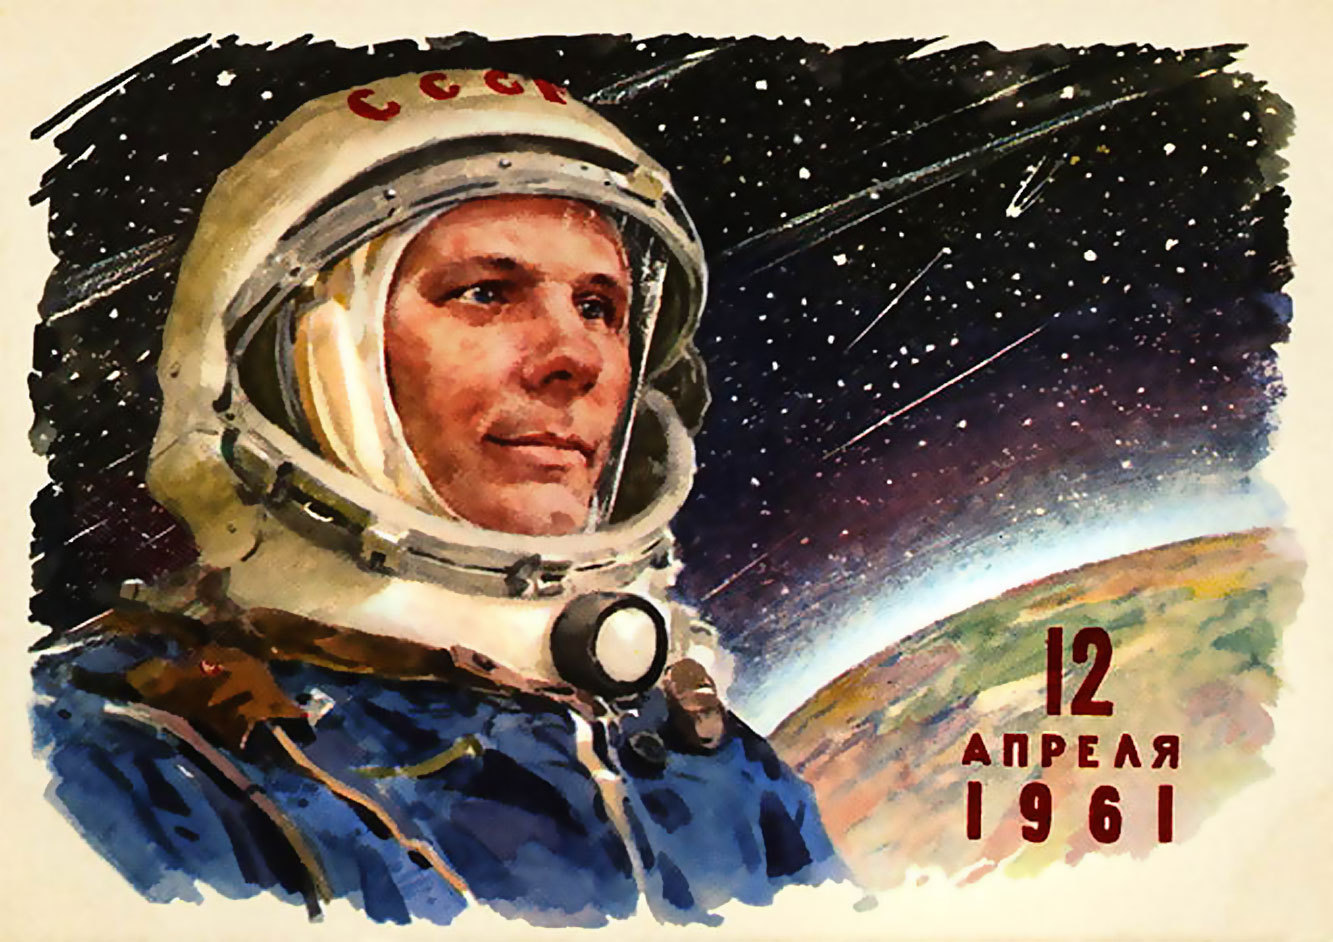 12 апреля 1961 года советский космонавт Ю. А. Гагарин впервые в мире совершил орбитальный облёт планеты Земля